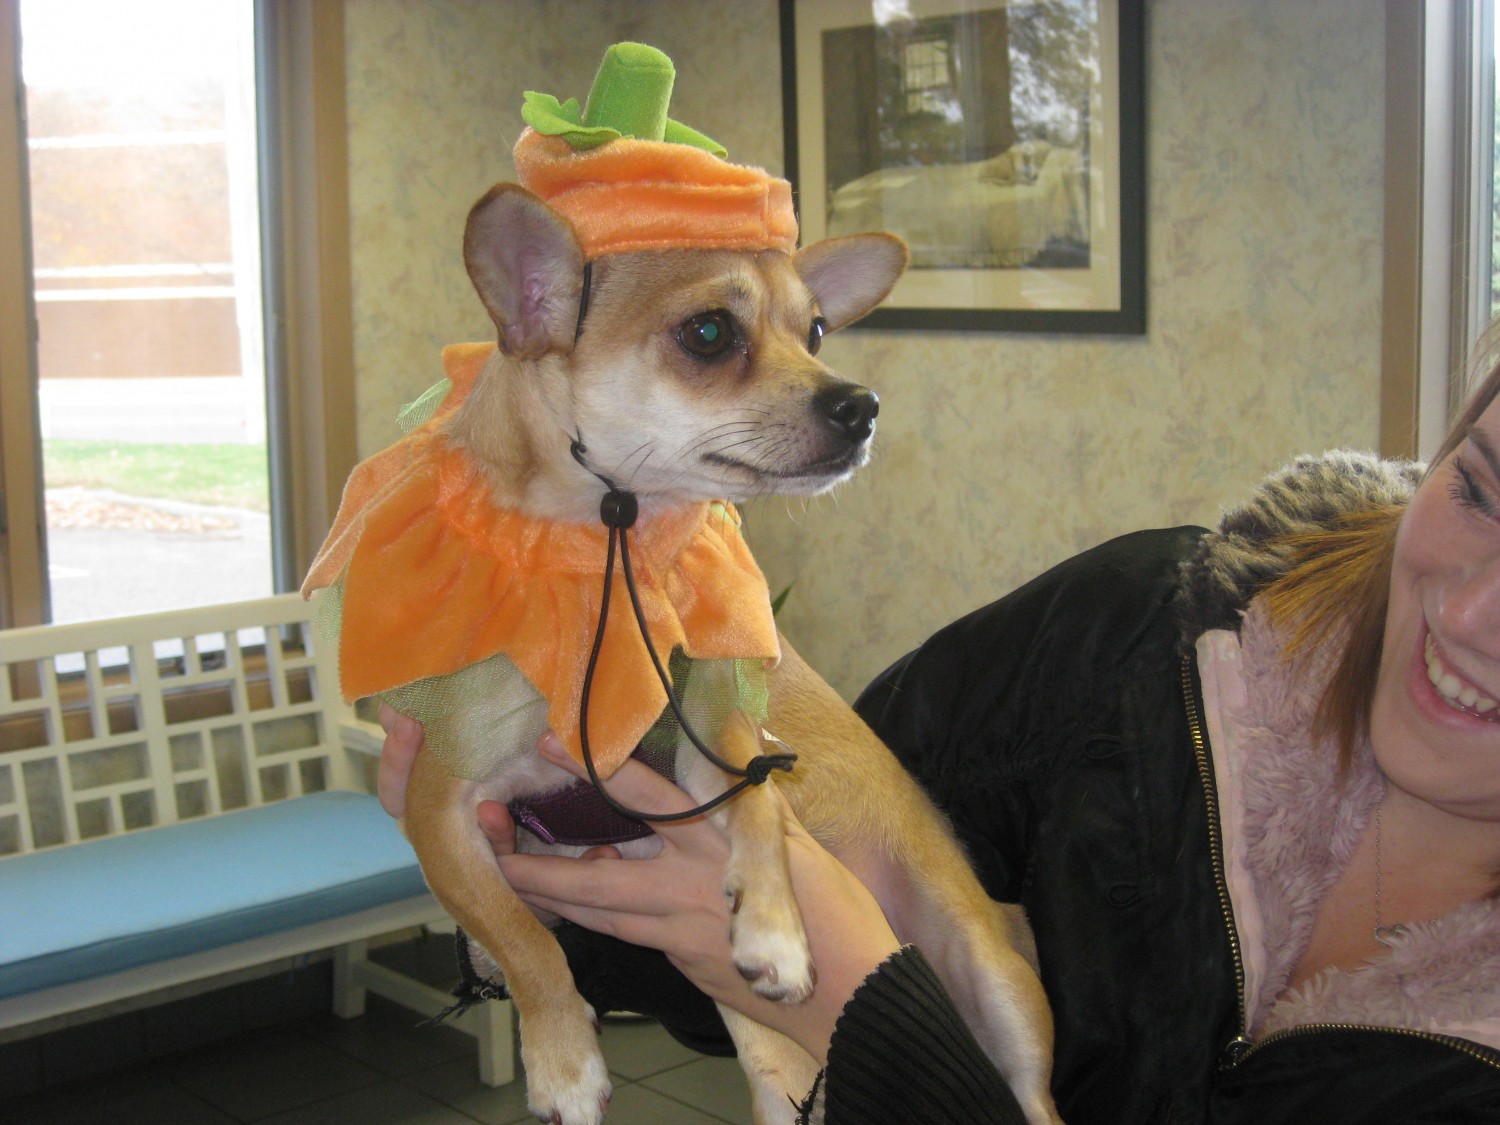 dog in pumpkin costume